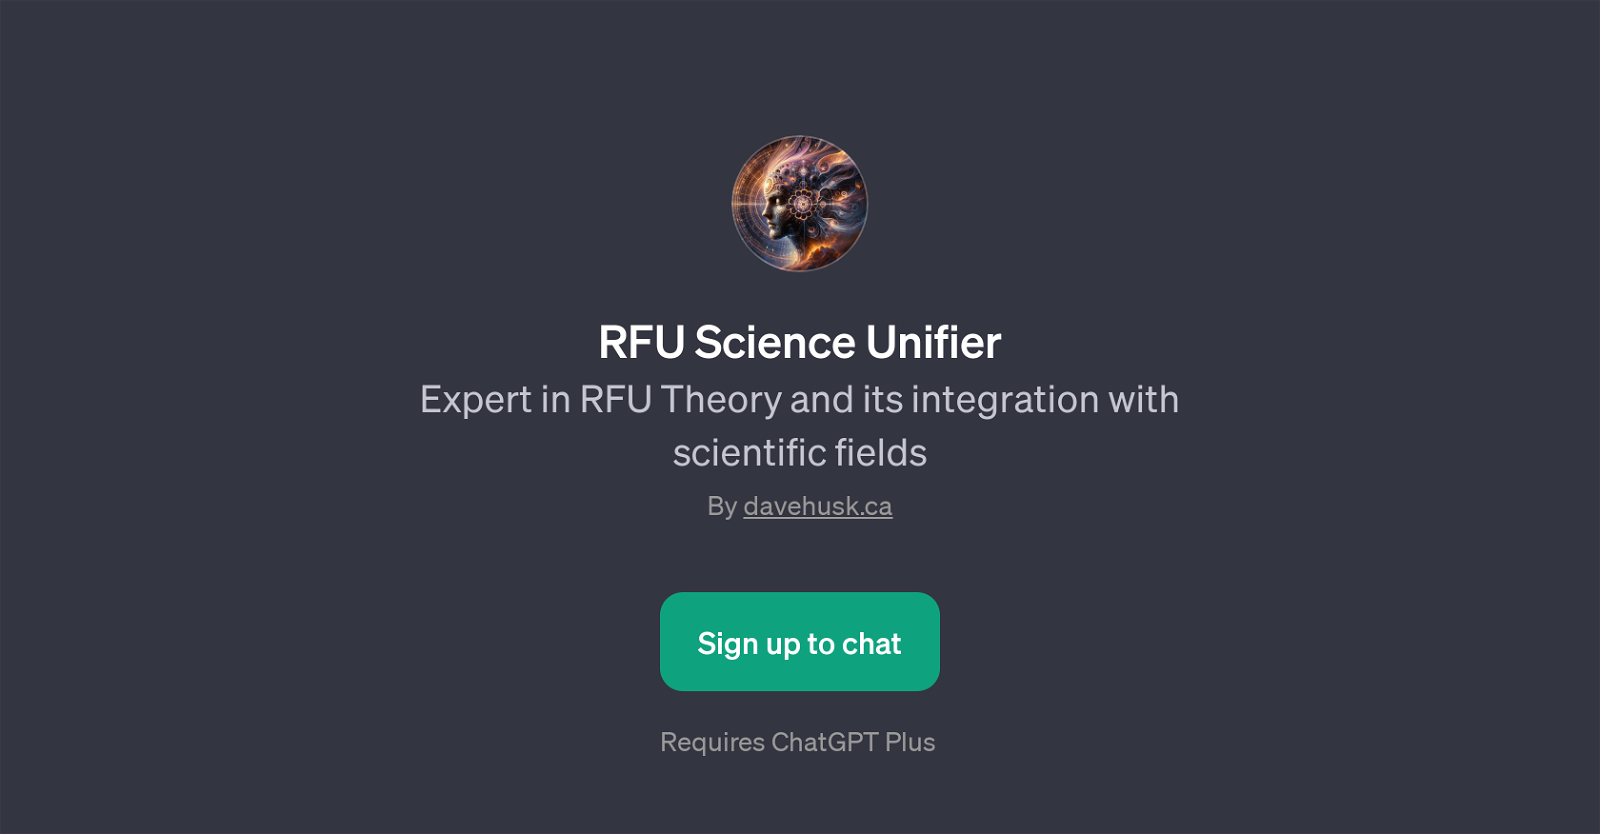 RFU Science Unifier website